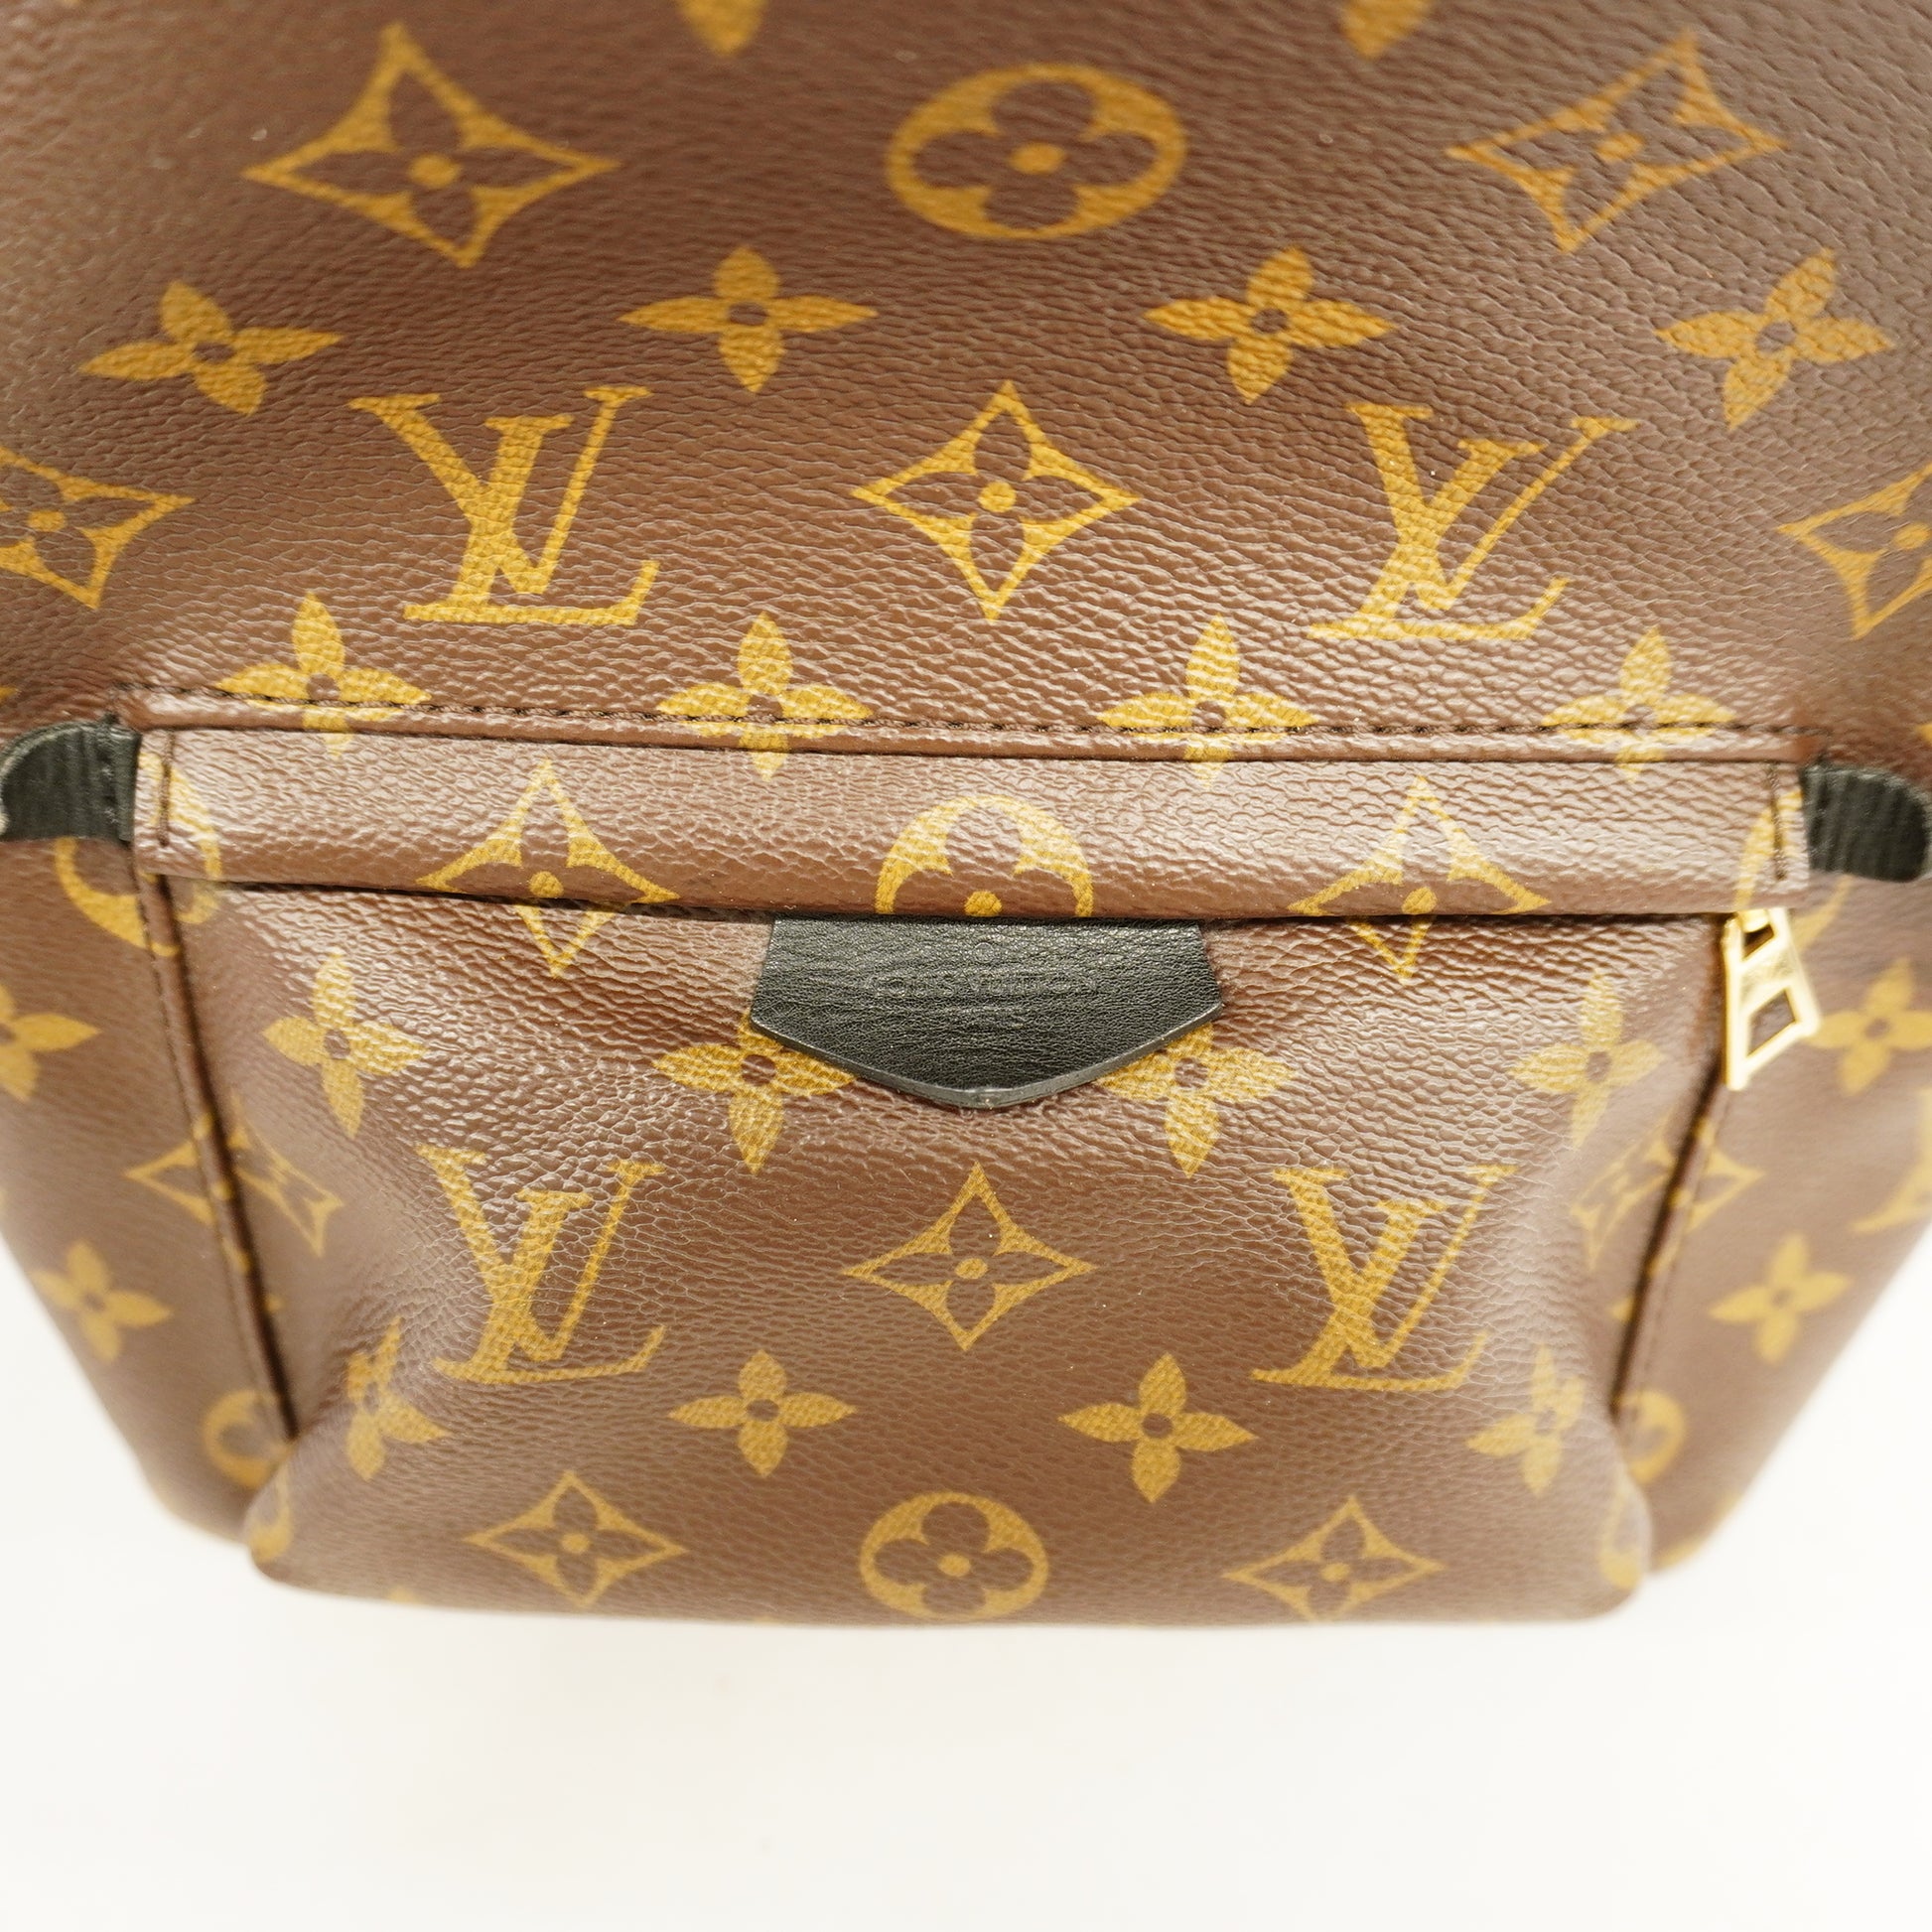 Louis Vuitton Palm Springs Backpack Size PM Noir M44871 Monogram